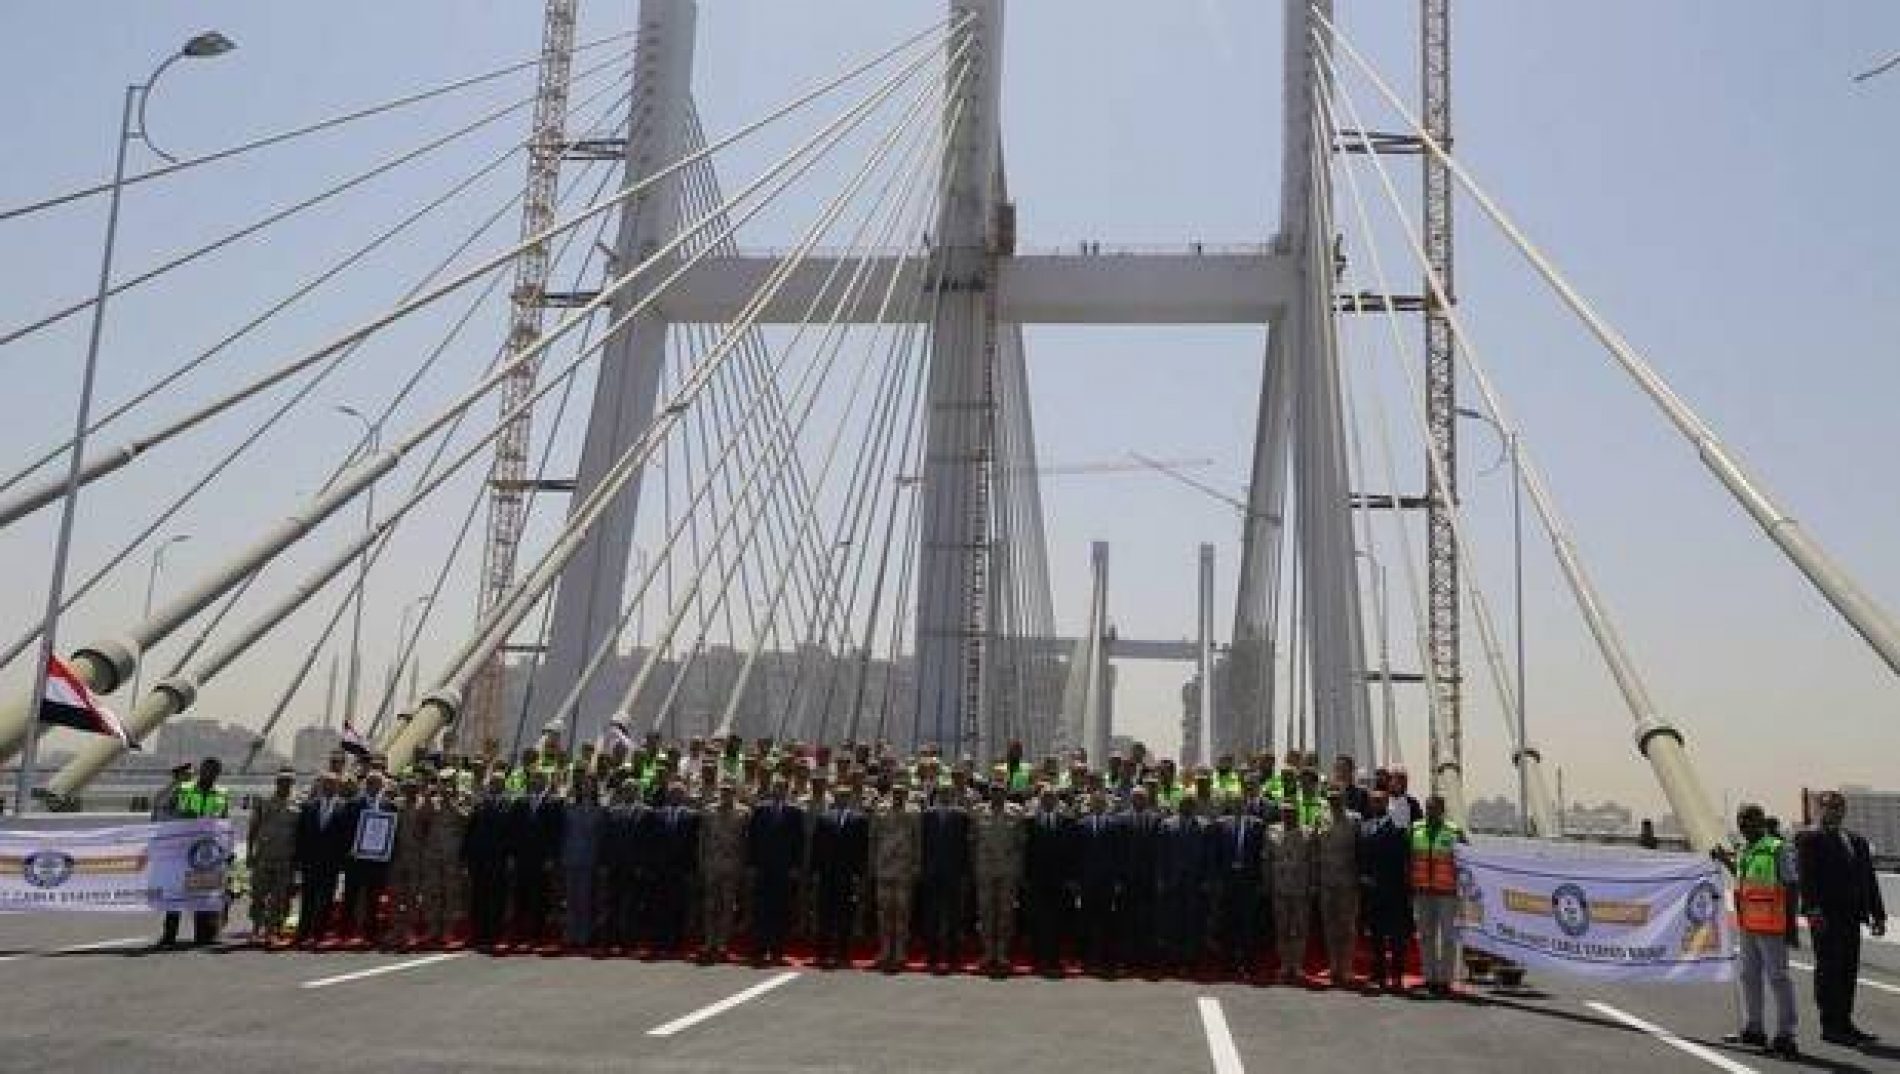 Égypte – Travaux publics : Inauguration du plus large pont suspendu du monde !